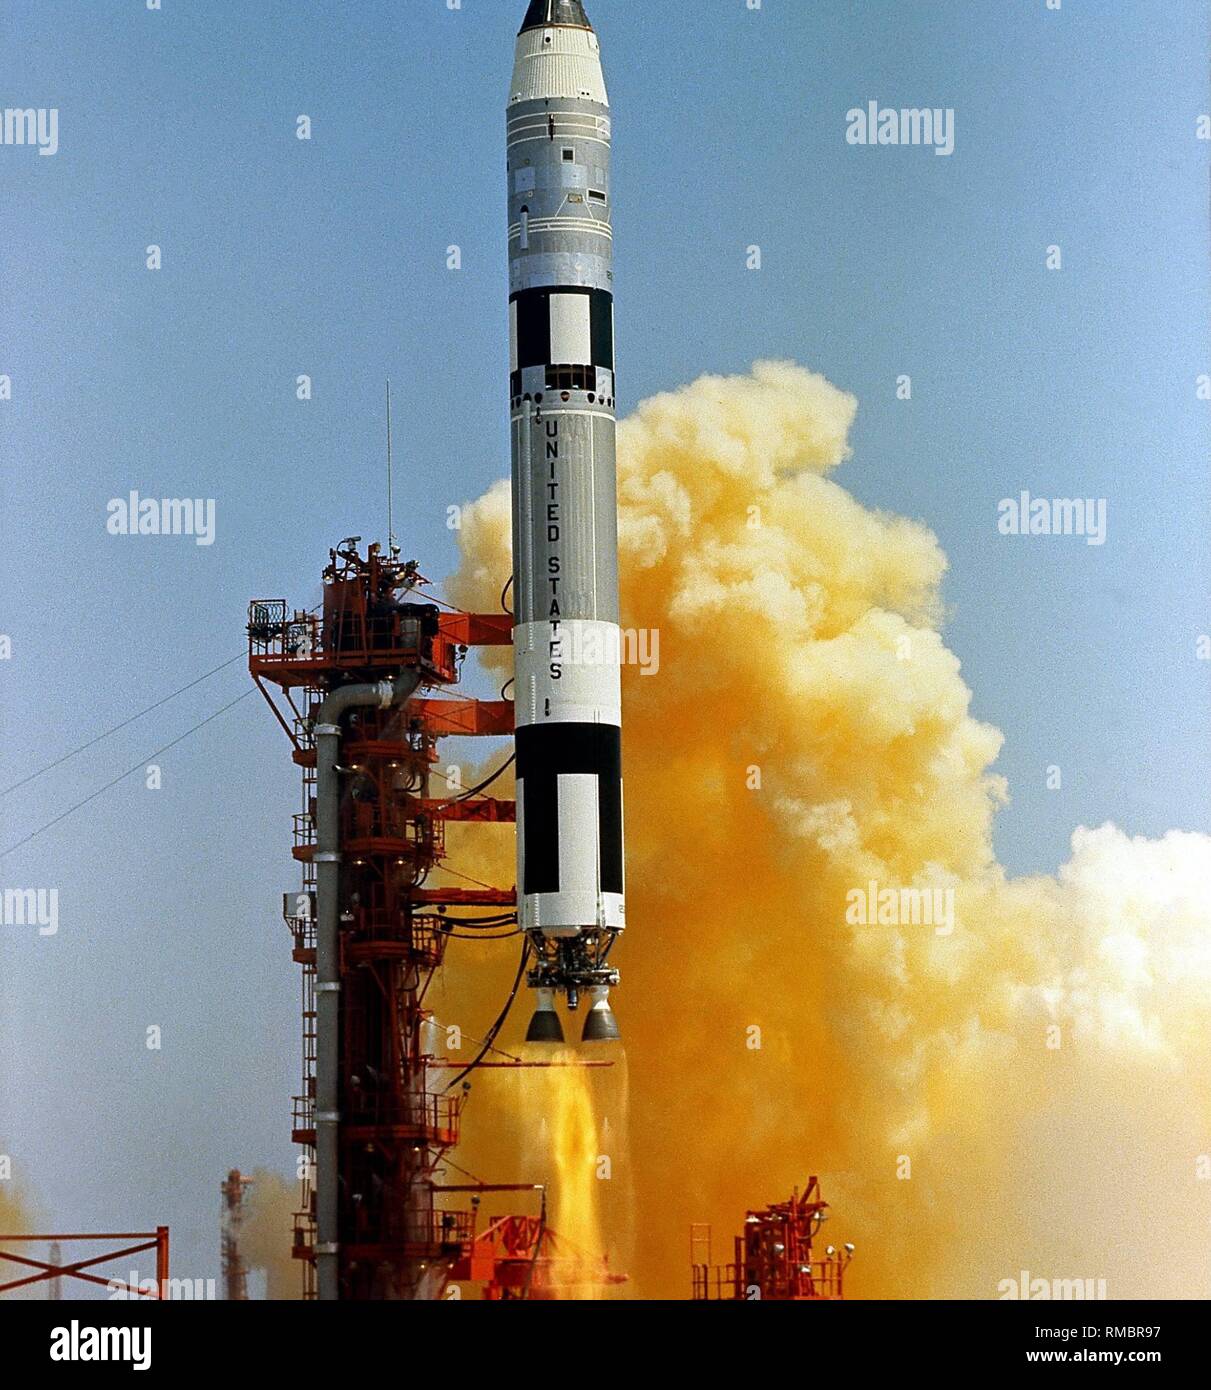 La fusée de propulsion de la mission Gemini 4, le Titan II GLV (Gemini Lancement Véhicule) à son lever. Gemini 4 avec le premier voyage dans l'espace, l'utilisation de l'activité Automobile (EVA), a été effectuée. Avec le programme Gemini, la résistance de l'homme et le matériel a été testé dans l'espace. Banque D'Images